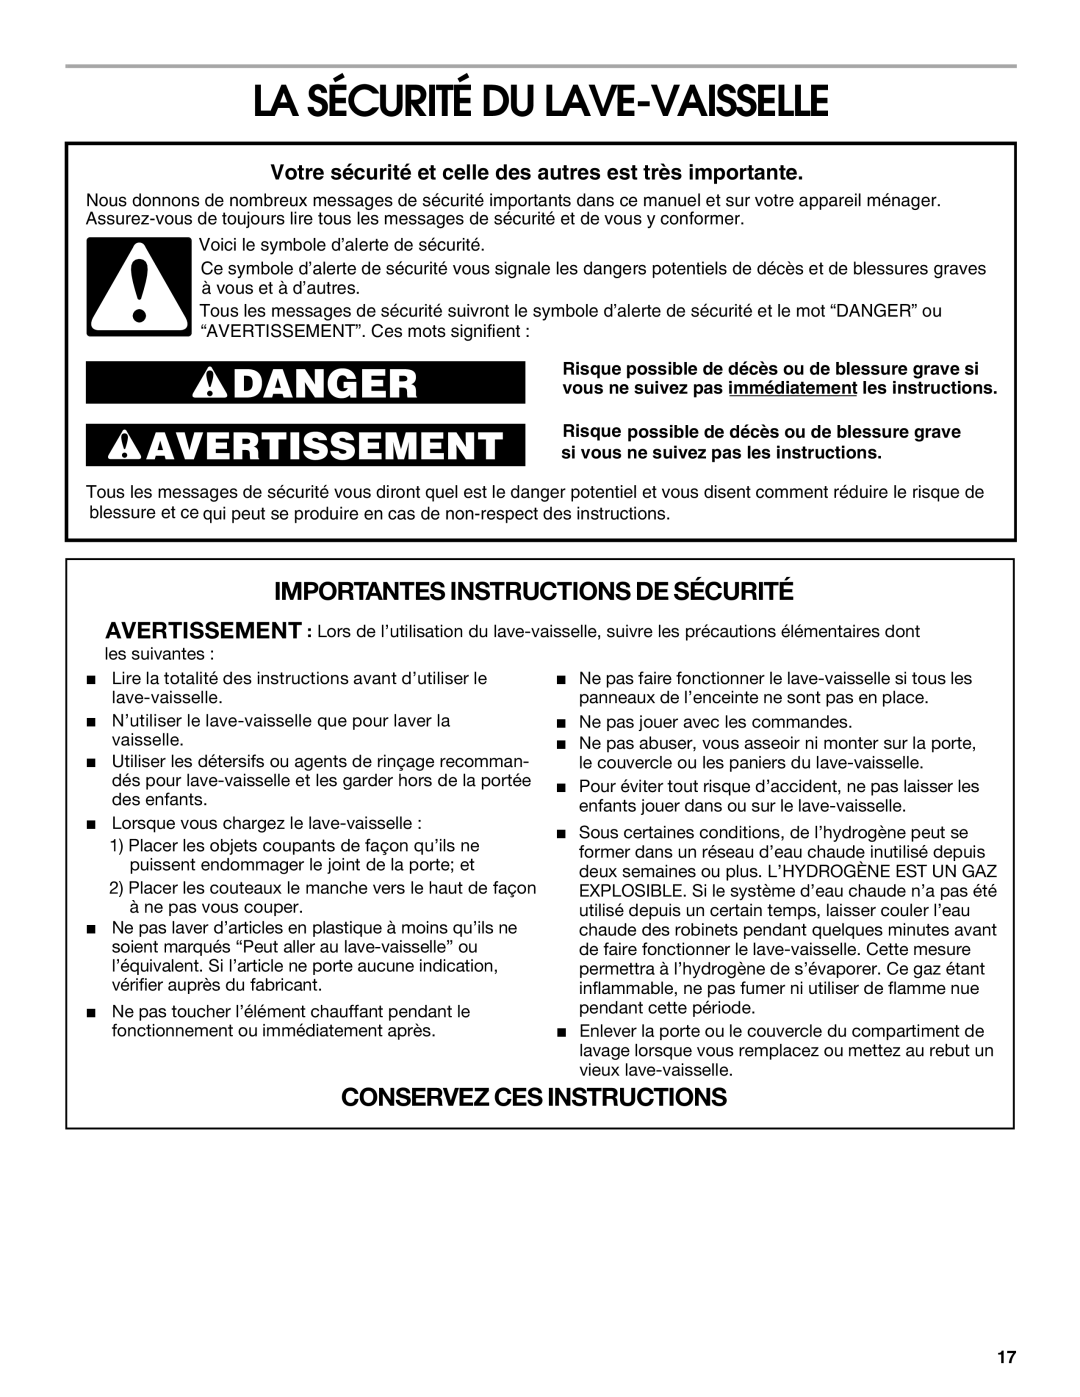 Estate TUD4700, TUD5700 manual La Sécurité Du Lave-Vaisselle, Votre sécurité et celle des autres est très importante, Danger 